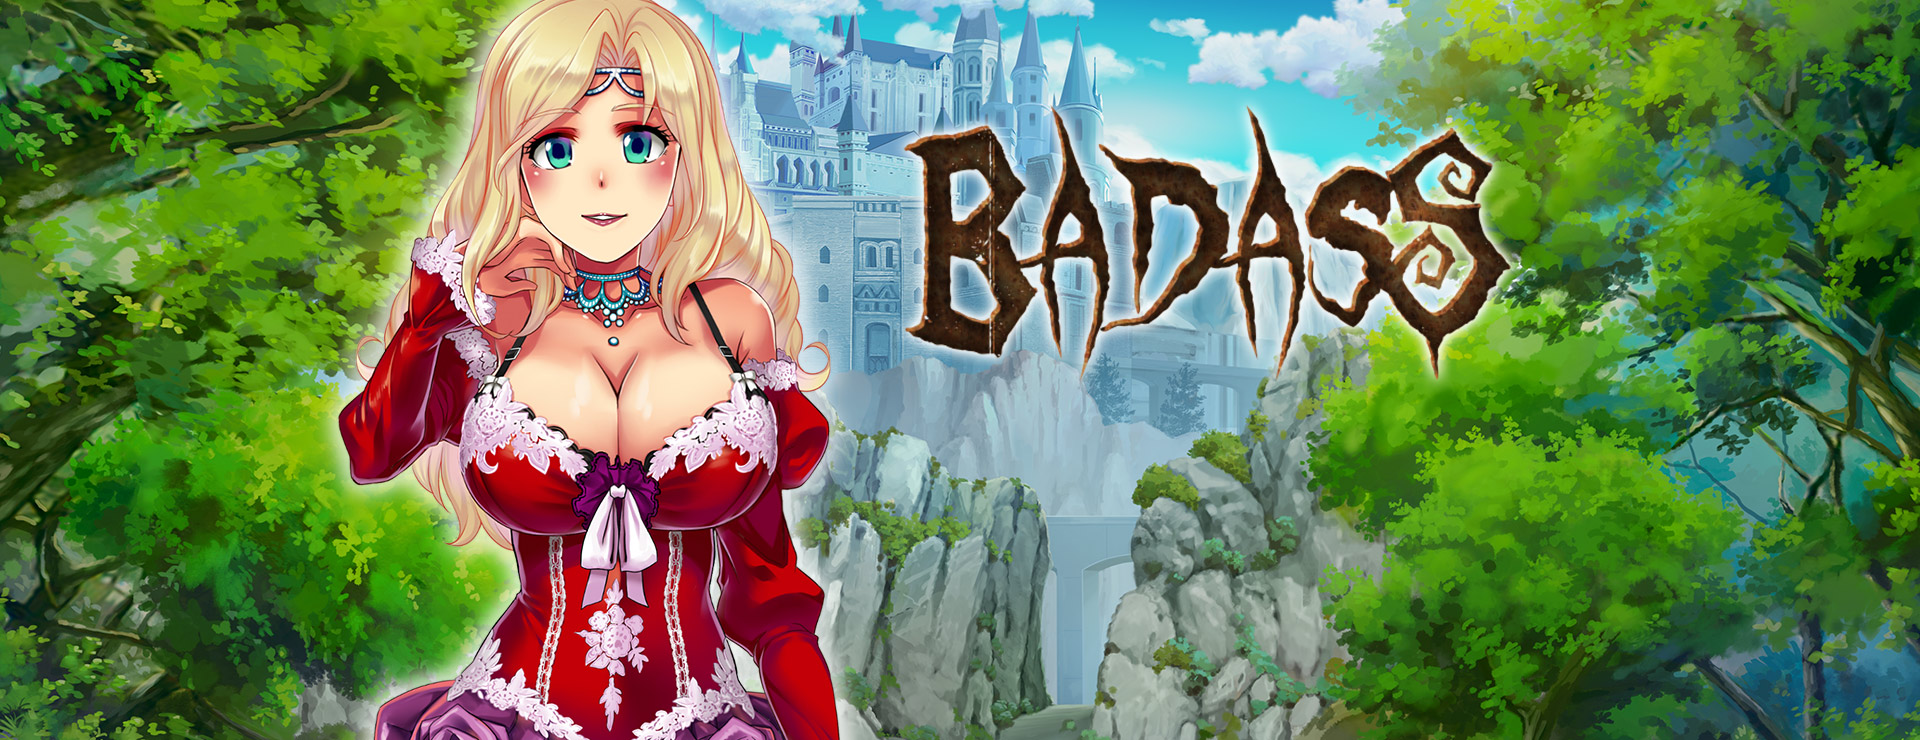 BADASS - RPG Gra